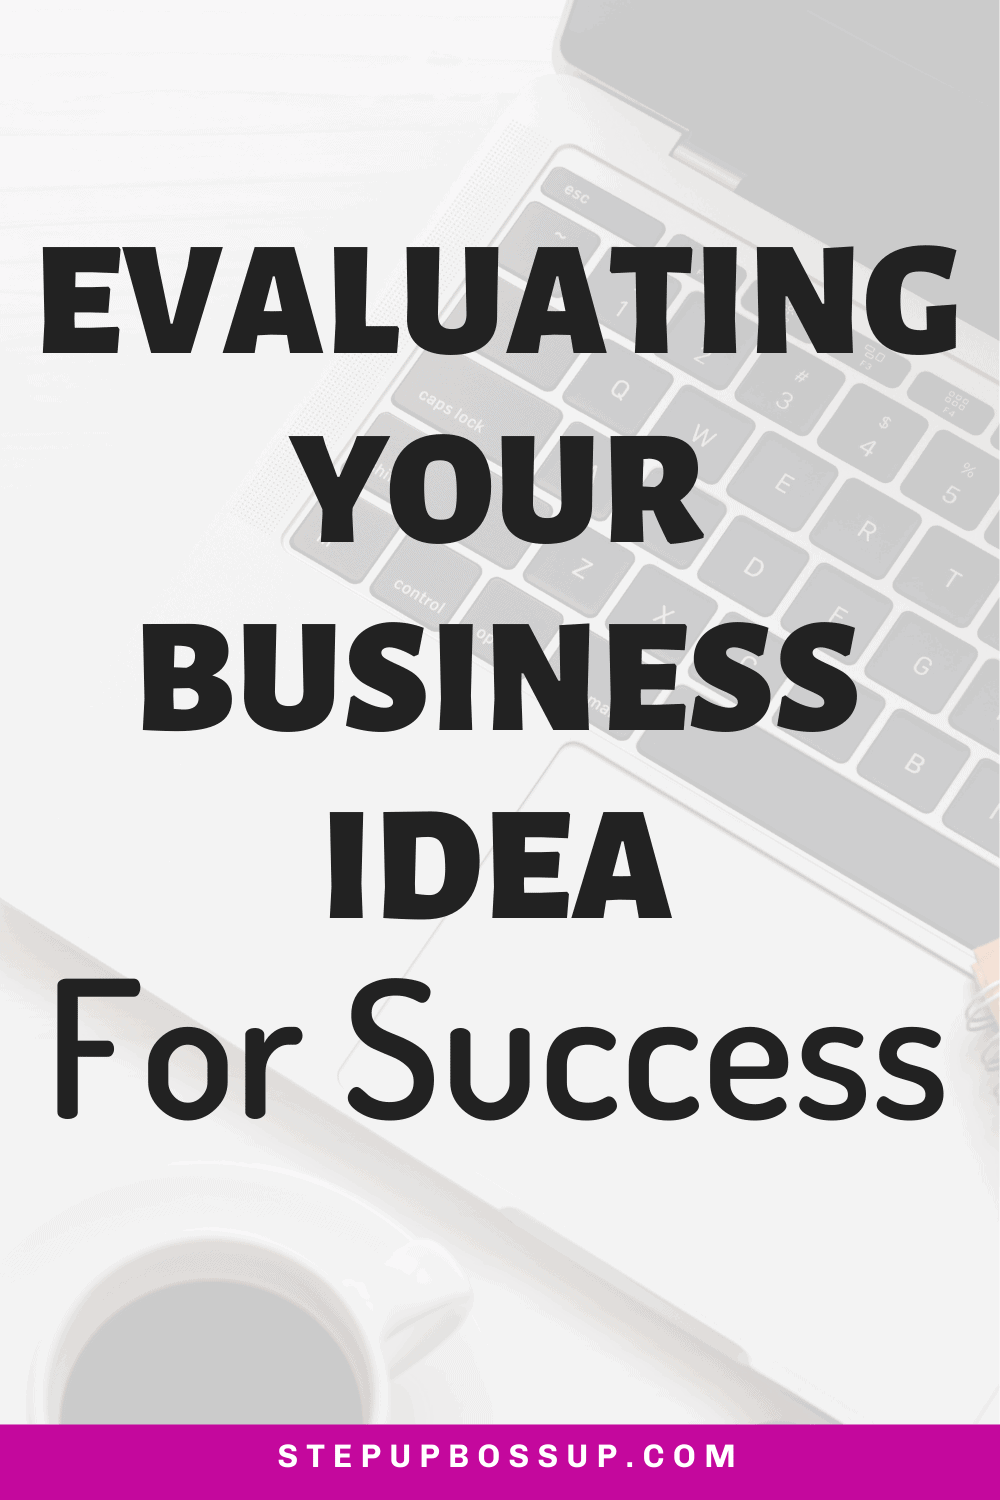 evaluate a business idea